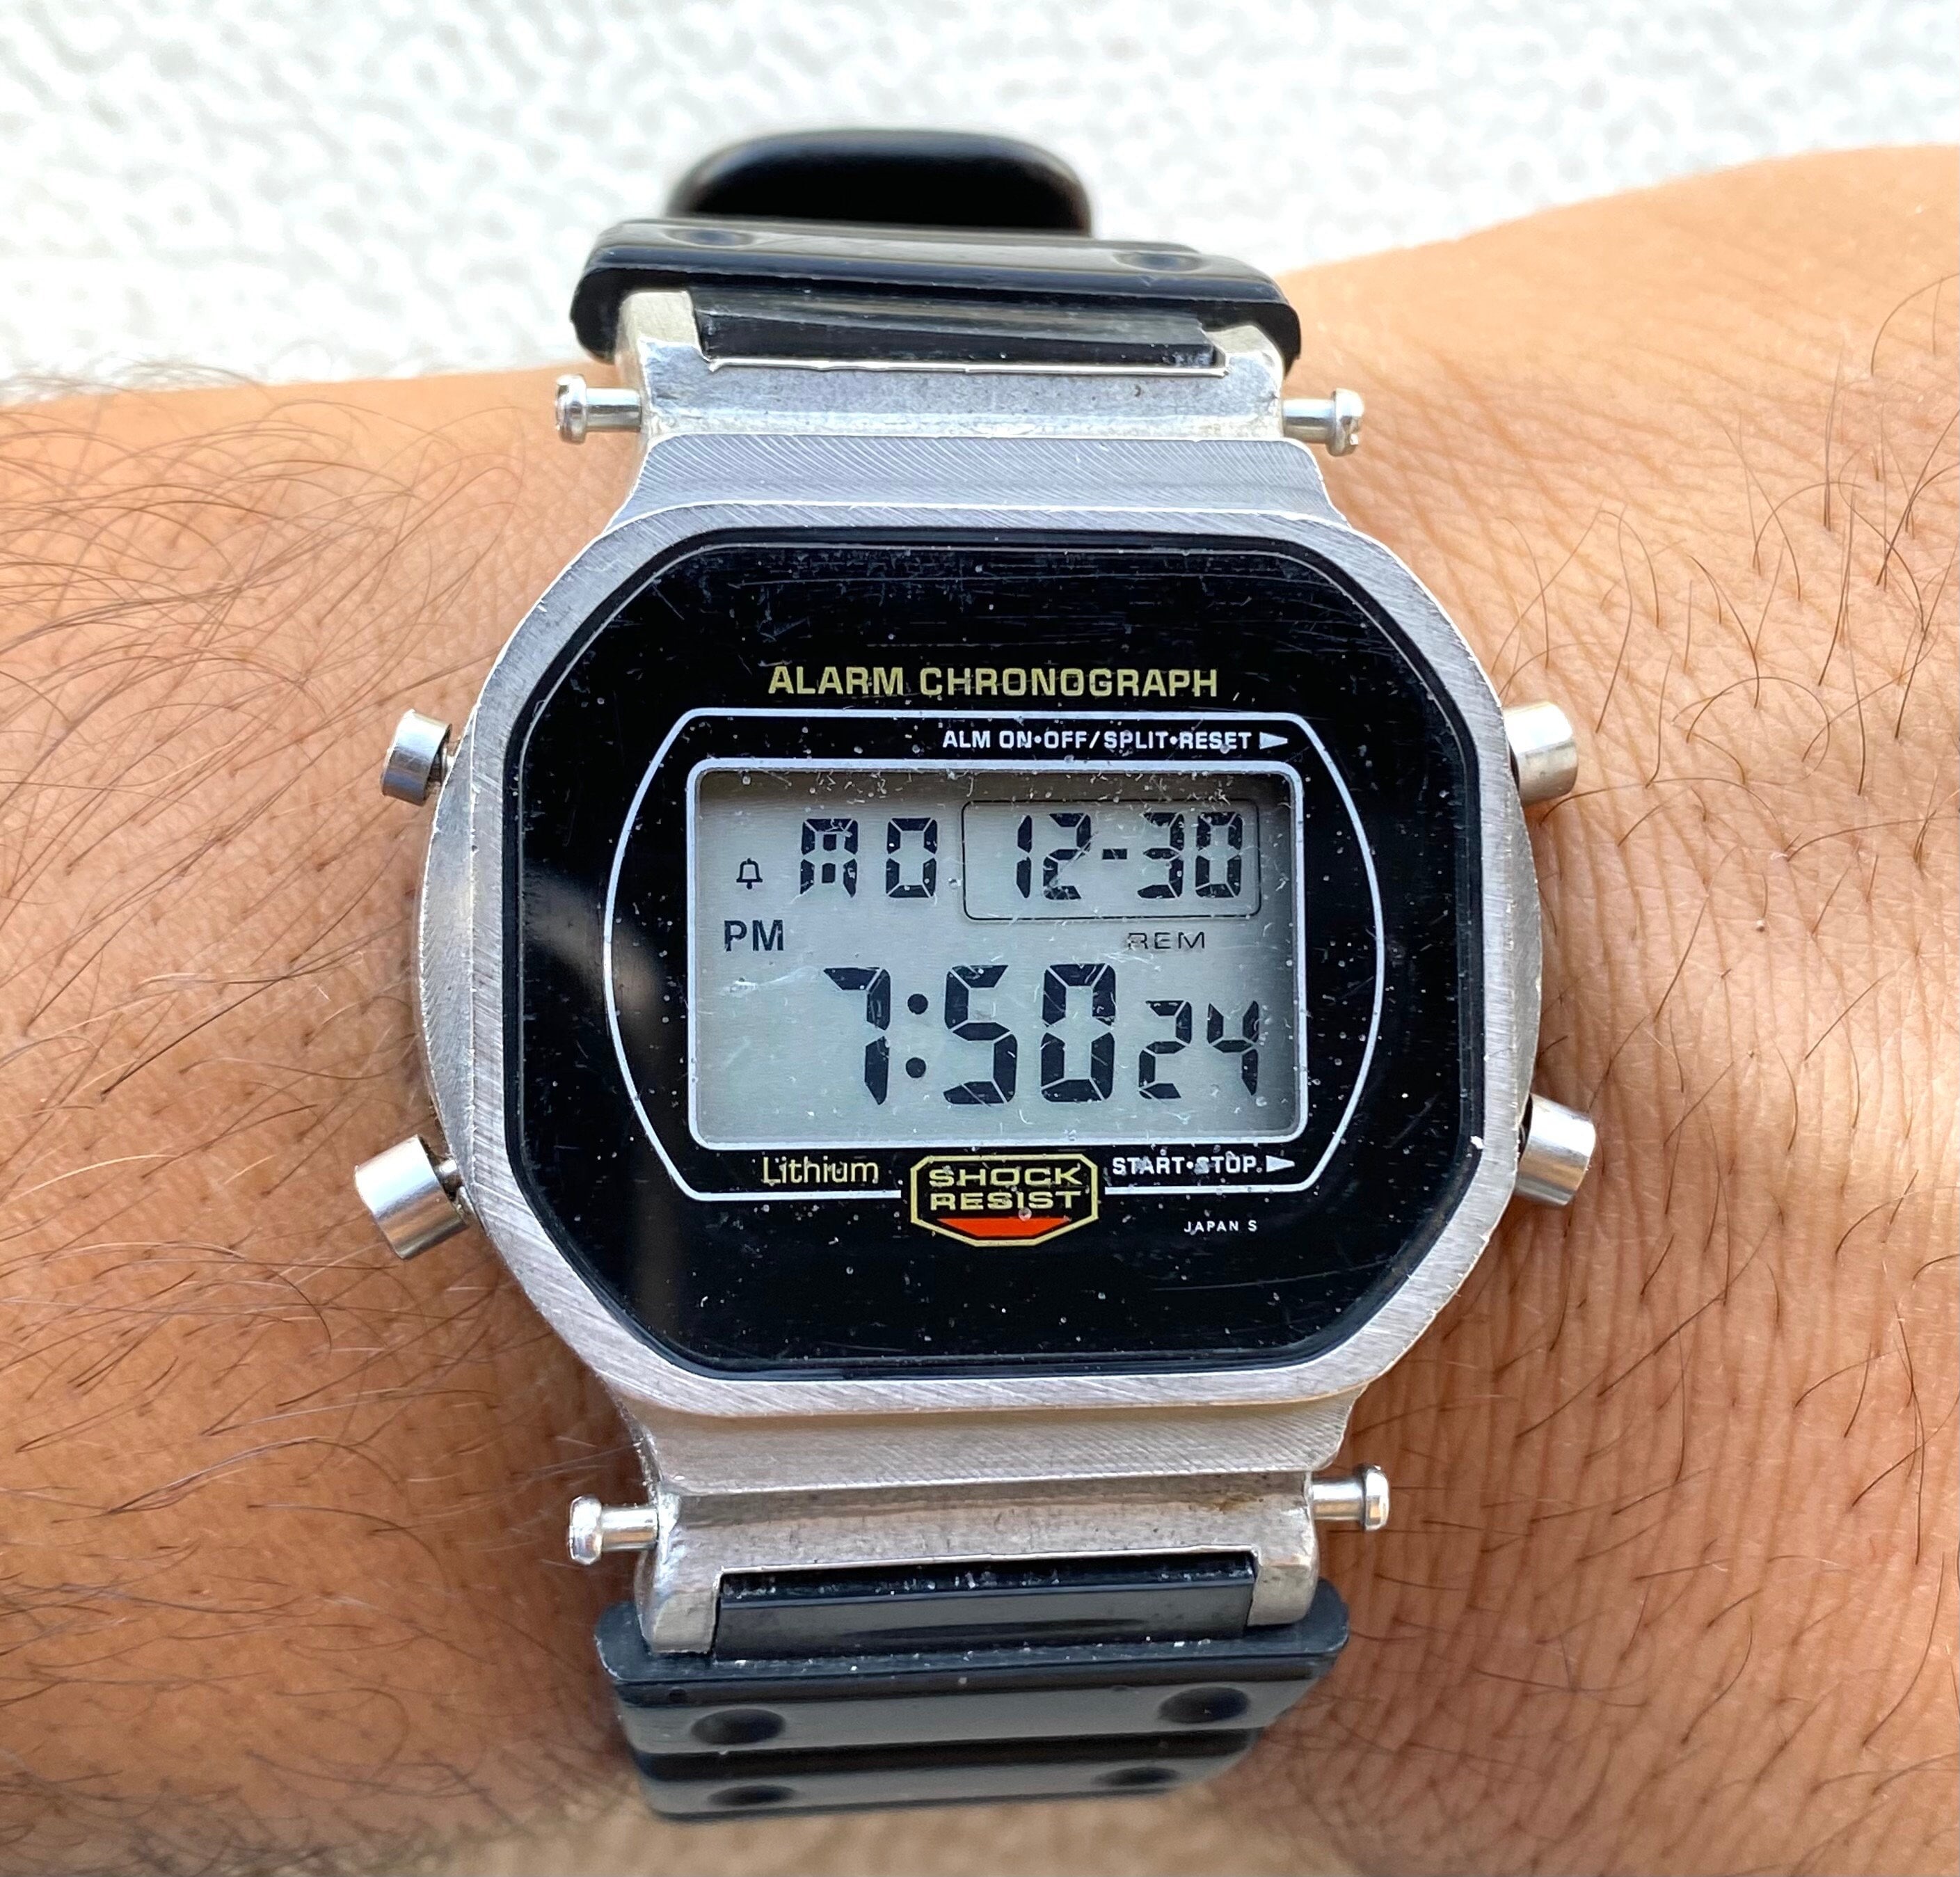 DW-5700 Module 200m Digital Watch Alarm - Etsy